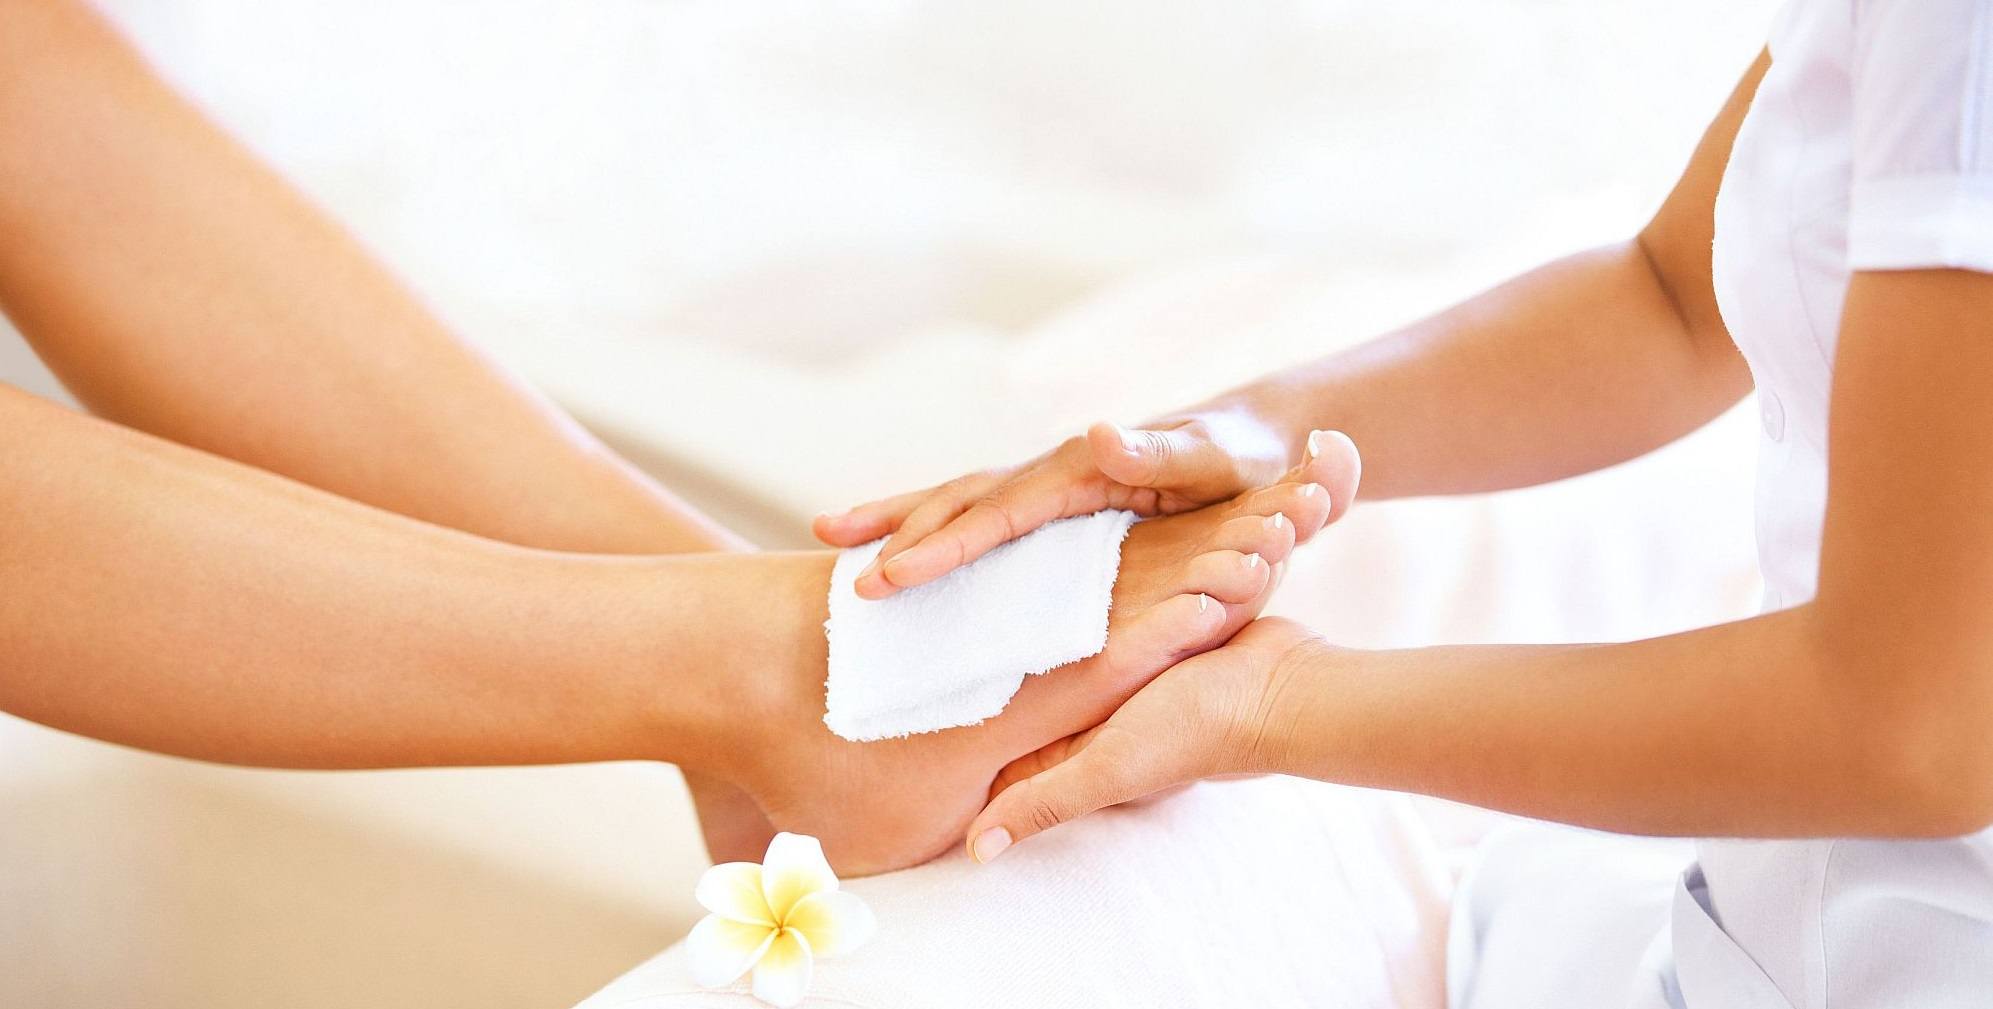 Как делать массаж лежачему больному: особенности, приемы, противопоказания